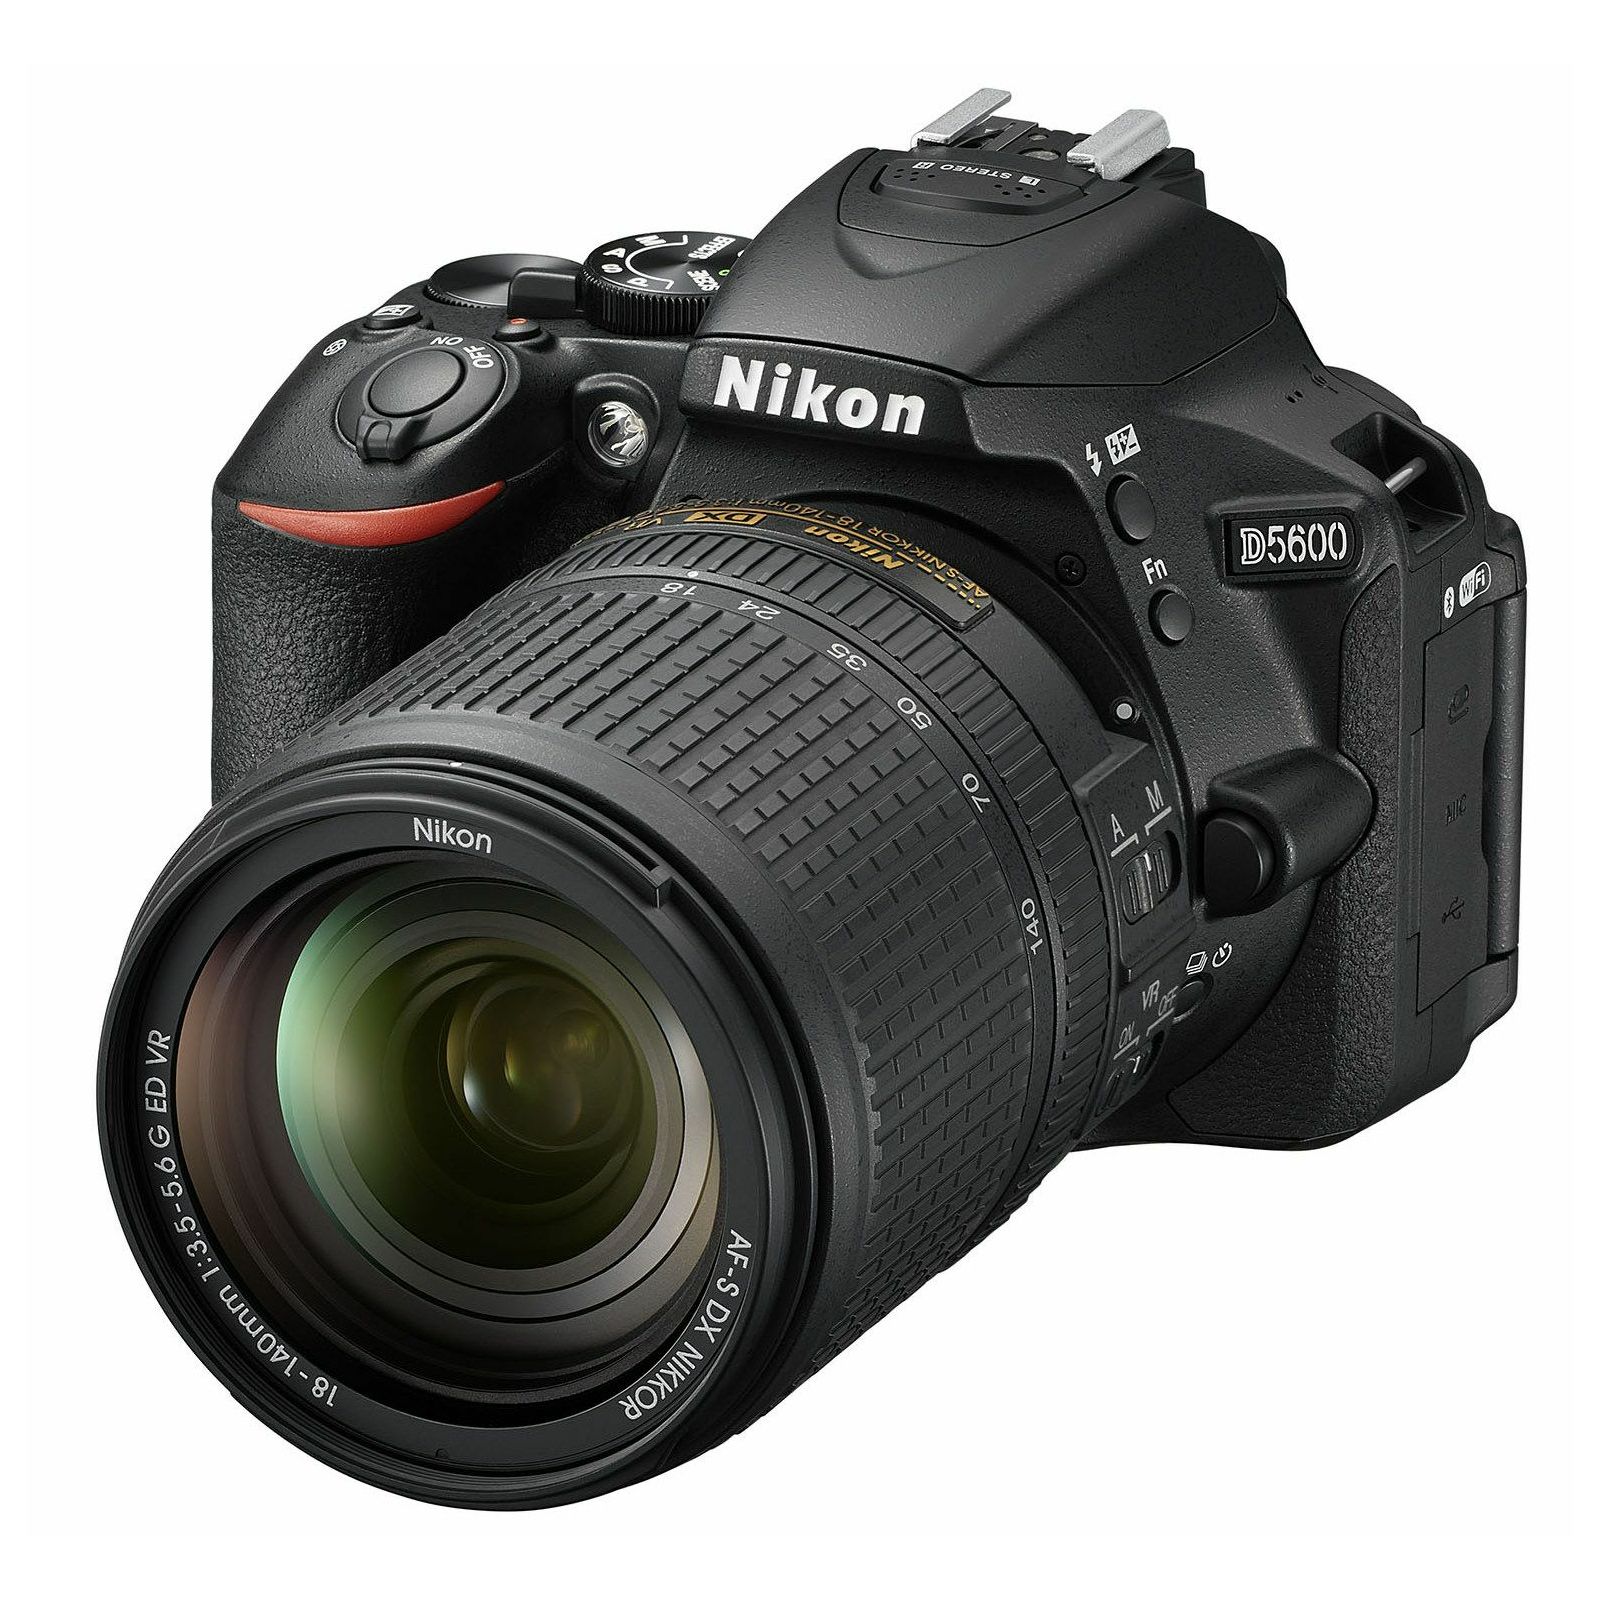 Nikon D5600 + AF-P 18-55 VR DX KIT DSLR Digitalni fotoaparat Camera with 18-55mm f/3.5-5.6 lens (VBA500K001)